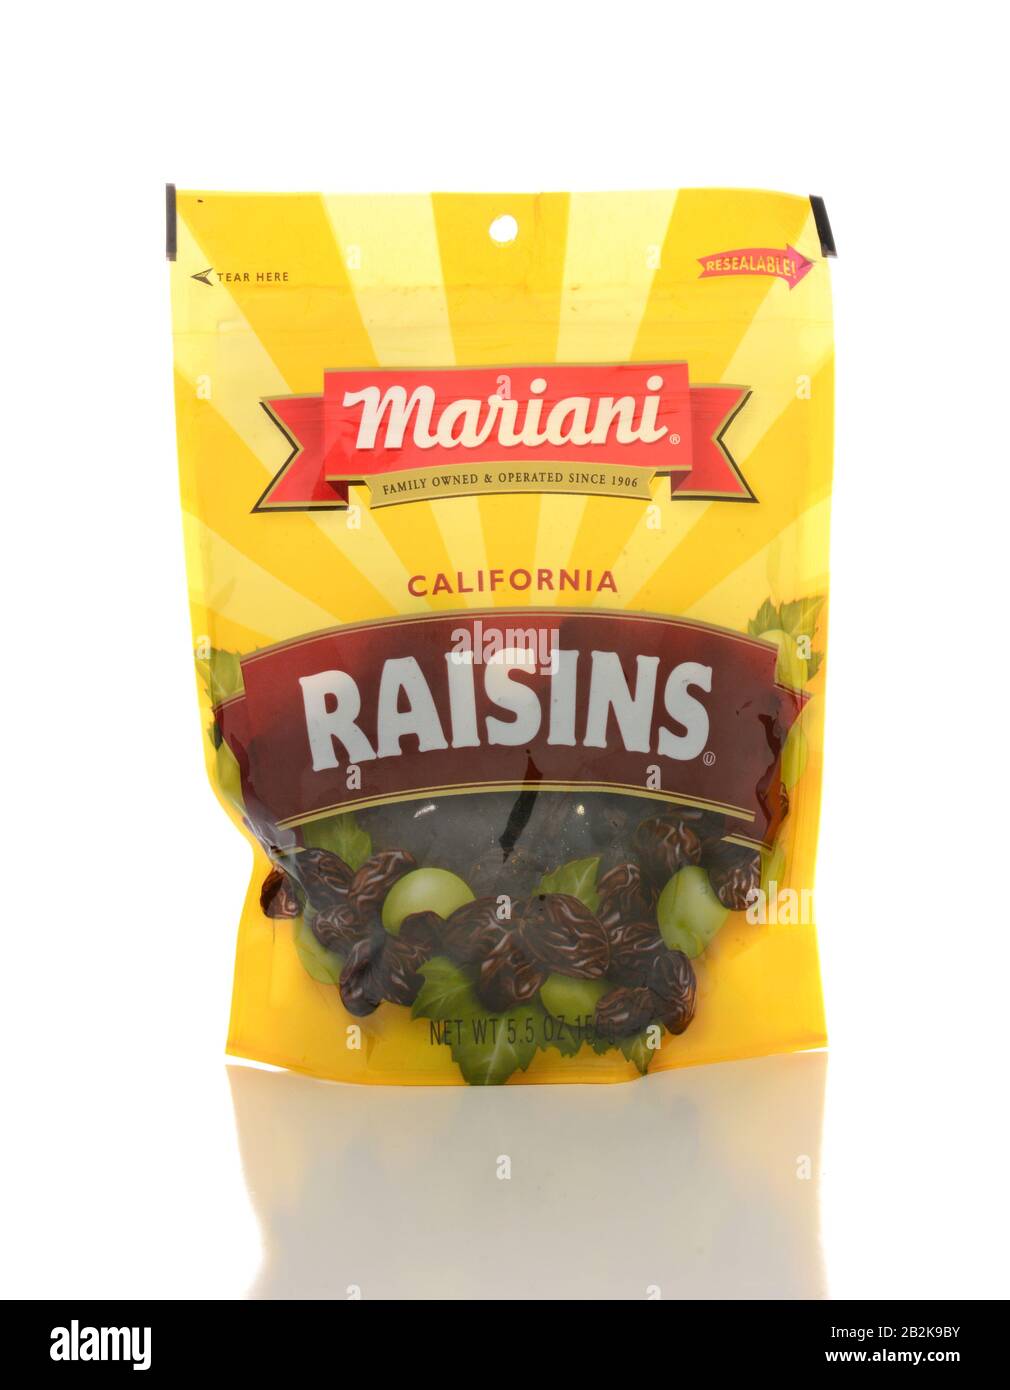 Irvine, CA - 23 JANVIER 2015 : un ensemble de raisins Mariani California Raisins. La Mariani Packing Company fournit des fruits secs depuis plus de 100 ans Banque D'Images